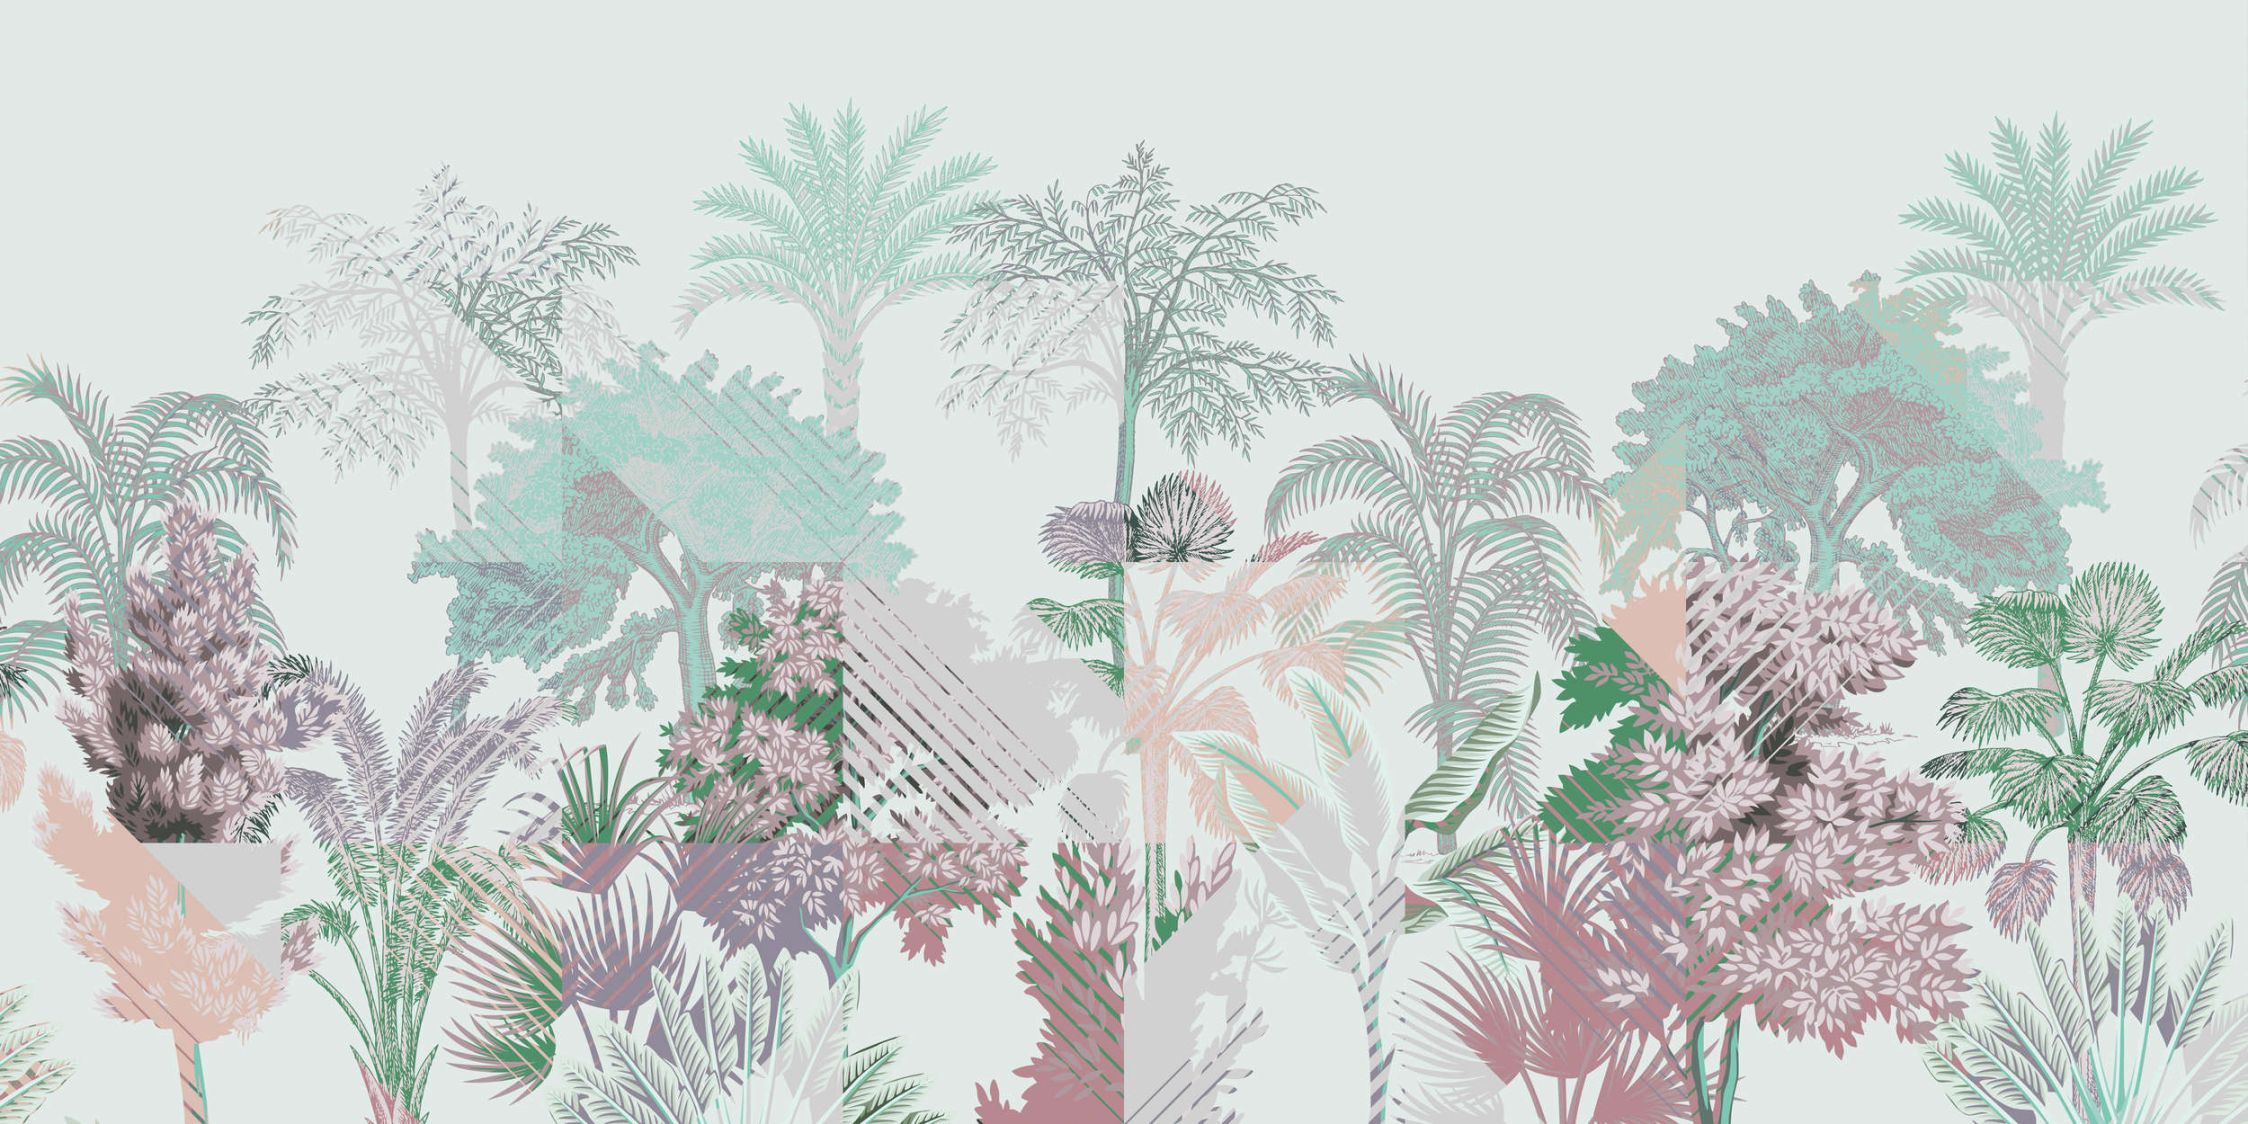             Fotomural »esplanada 1«< - patchwork de jungla con arbustos - verde, rosa | Tela no tejida lisa, ligeramente nacarada y brillante
        